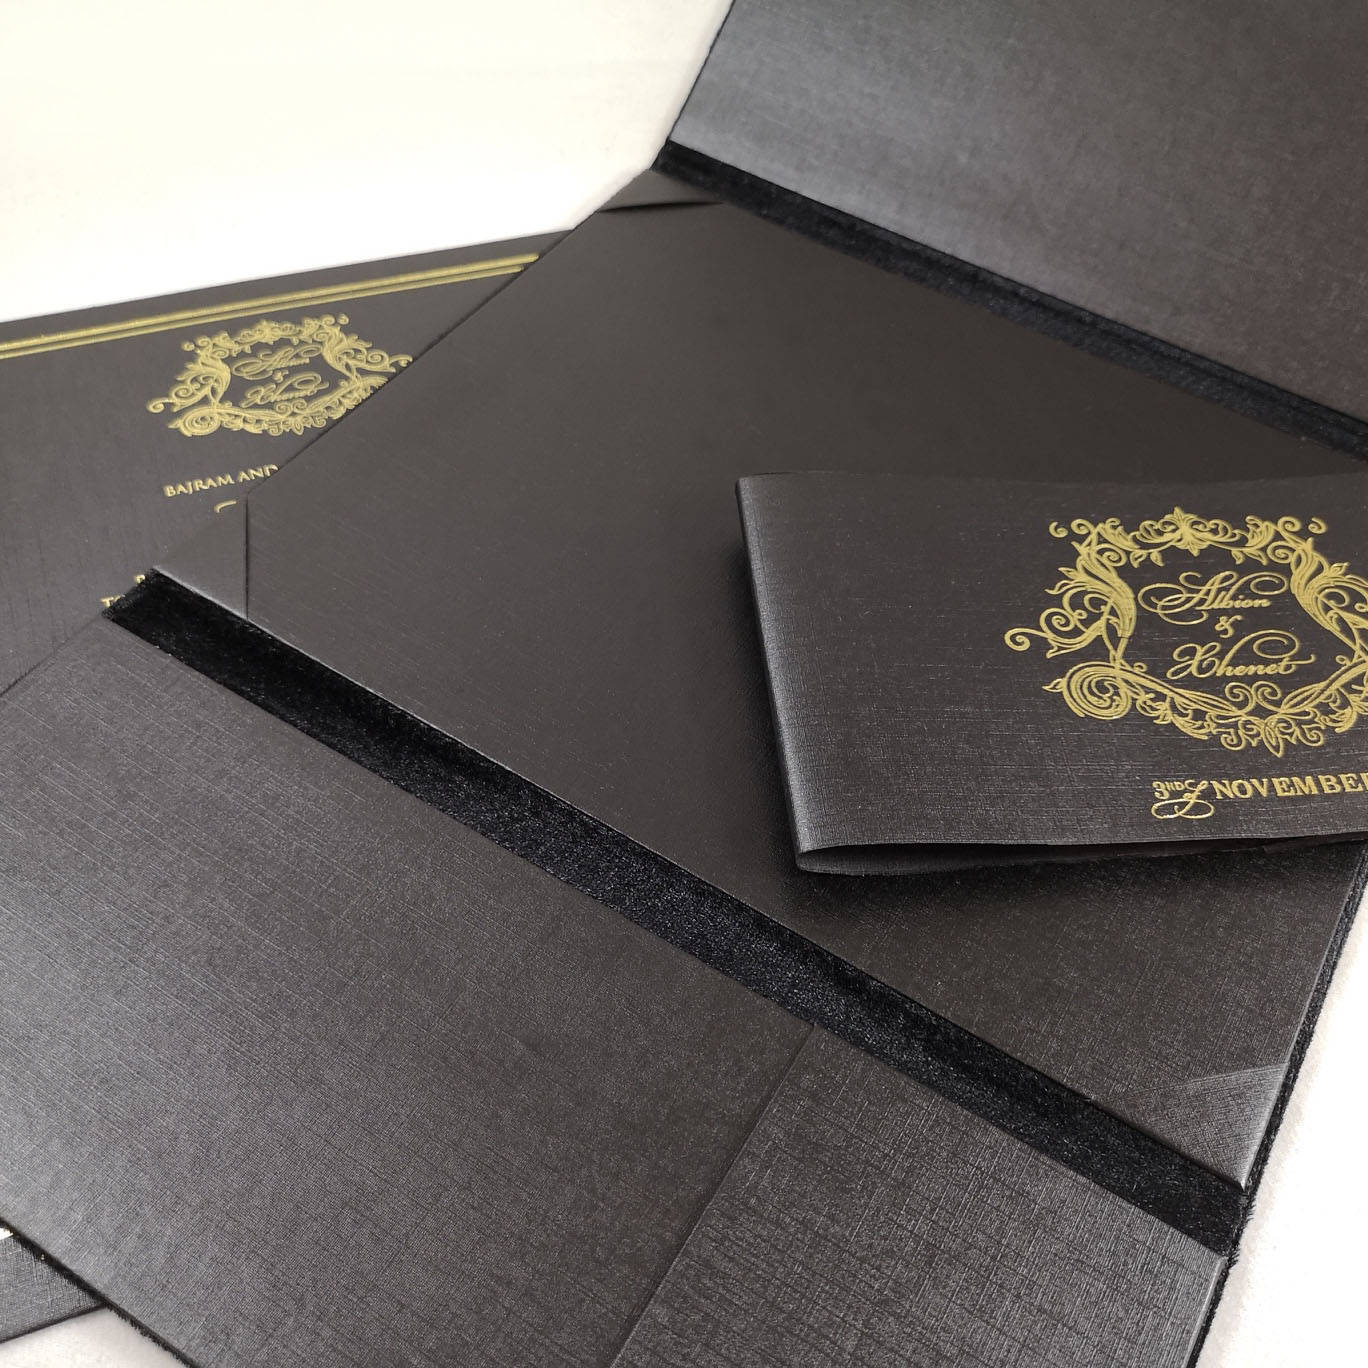 Elegant wedding invitation design with gold foil stamped monogram